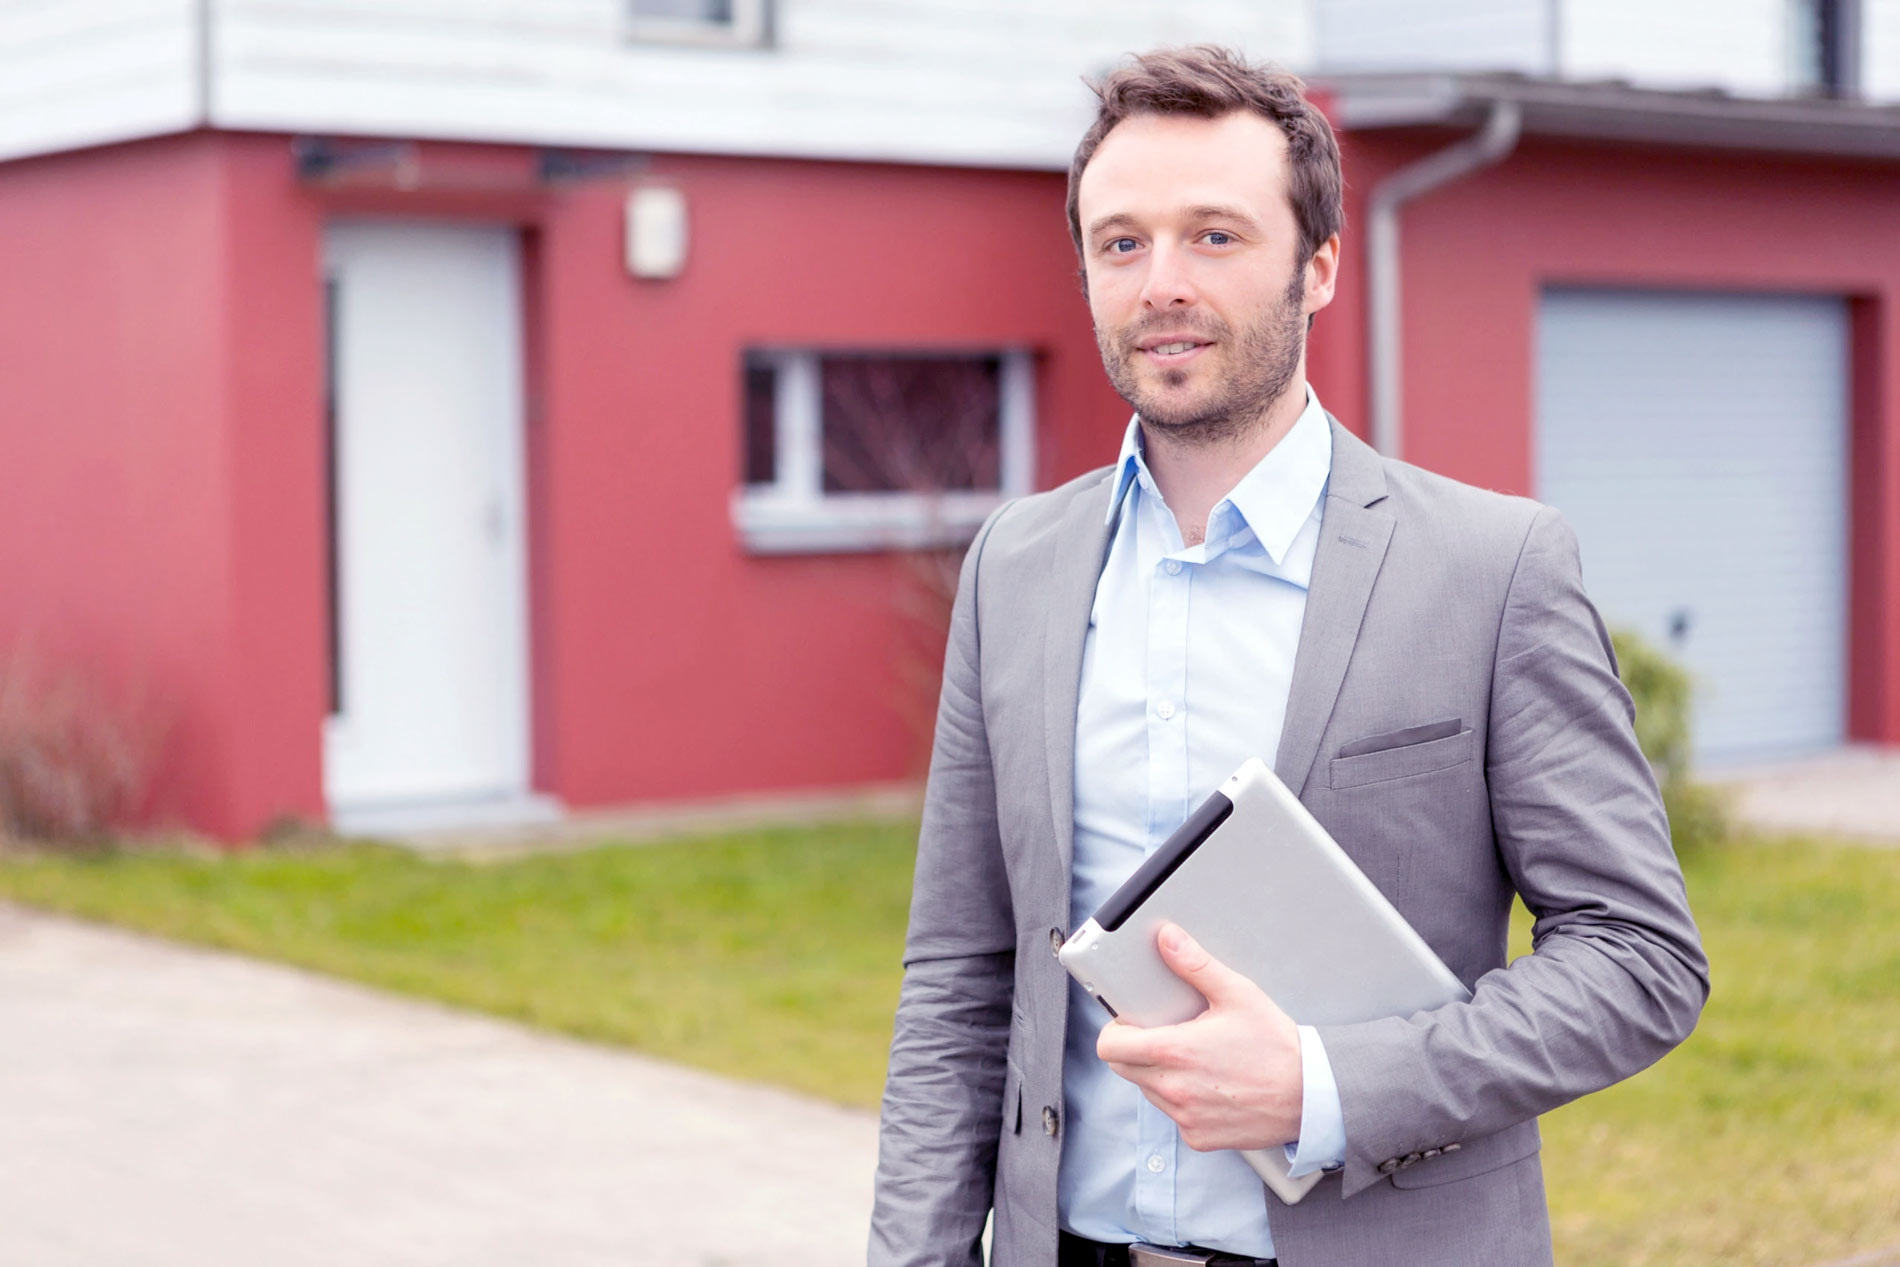 Agent immobilier : comment trouver un diagnostiqueur de confiance ?